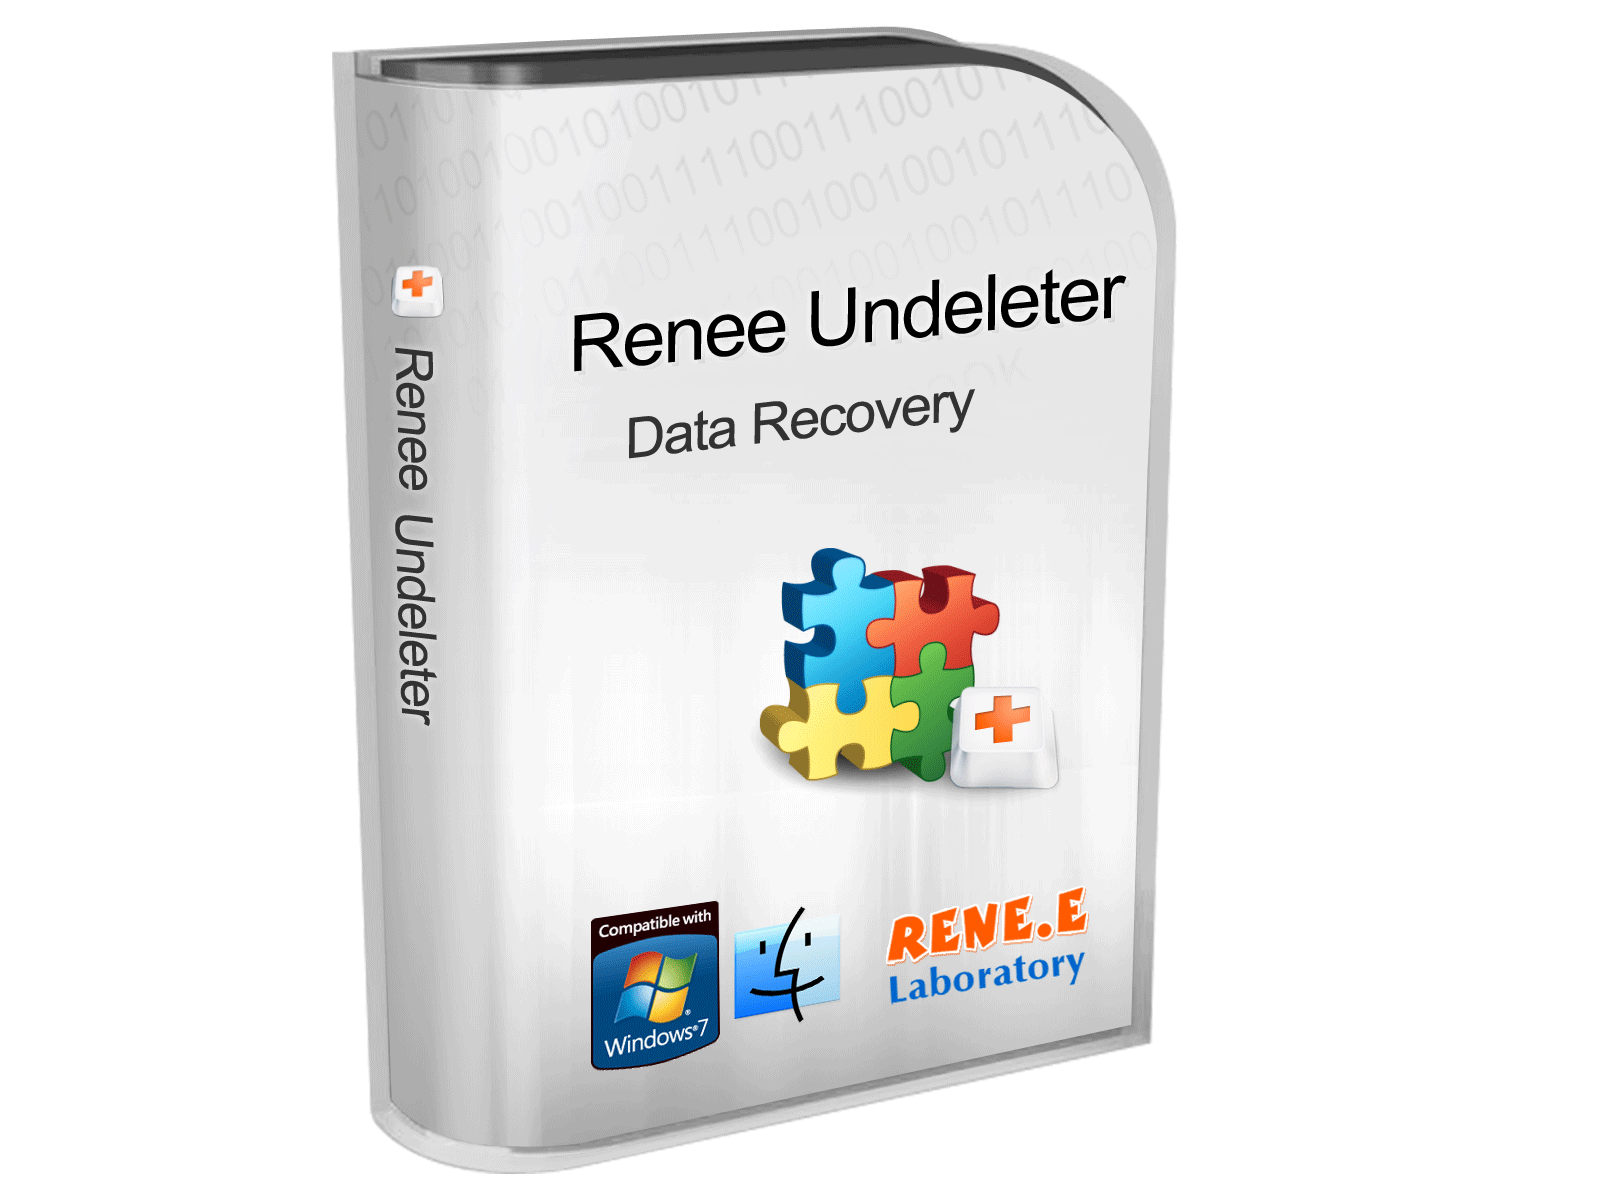 Renee Undeleter software